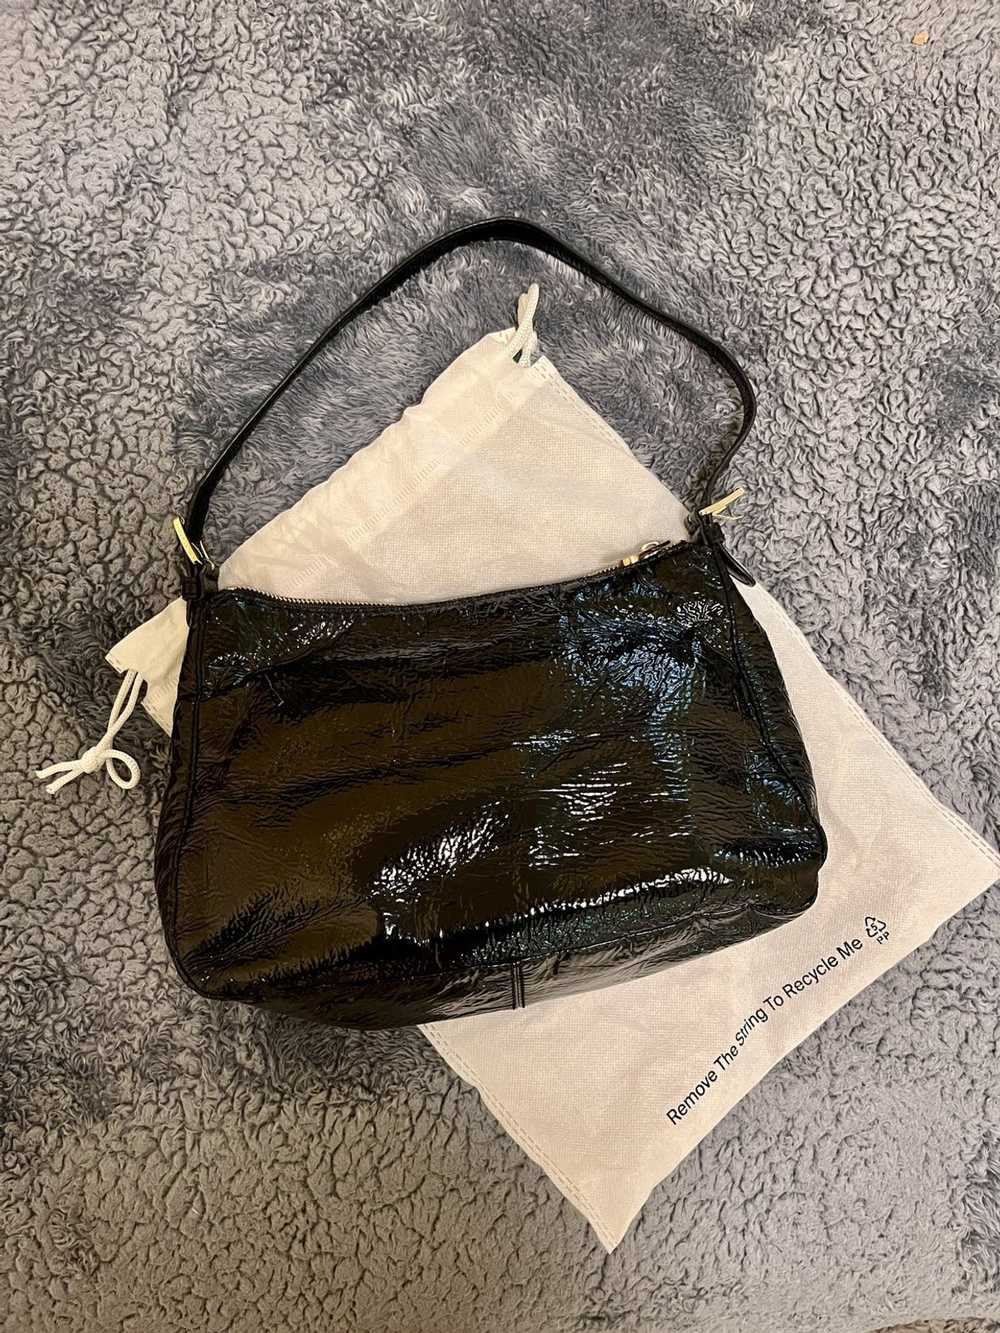 Michael Kors Black Shiny Leather Shoulder Bag - image 4